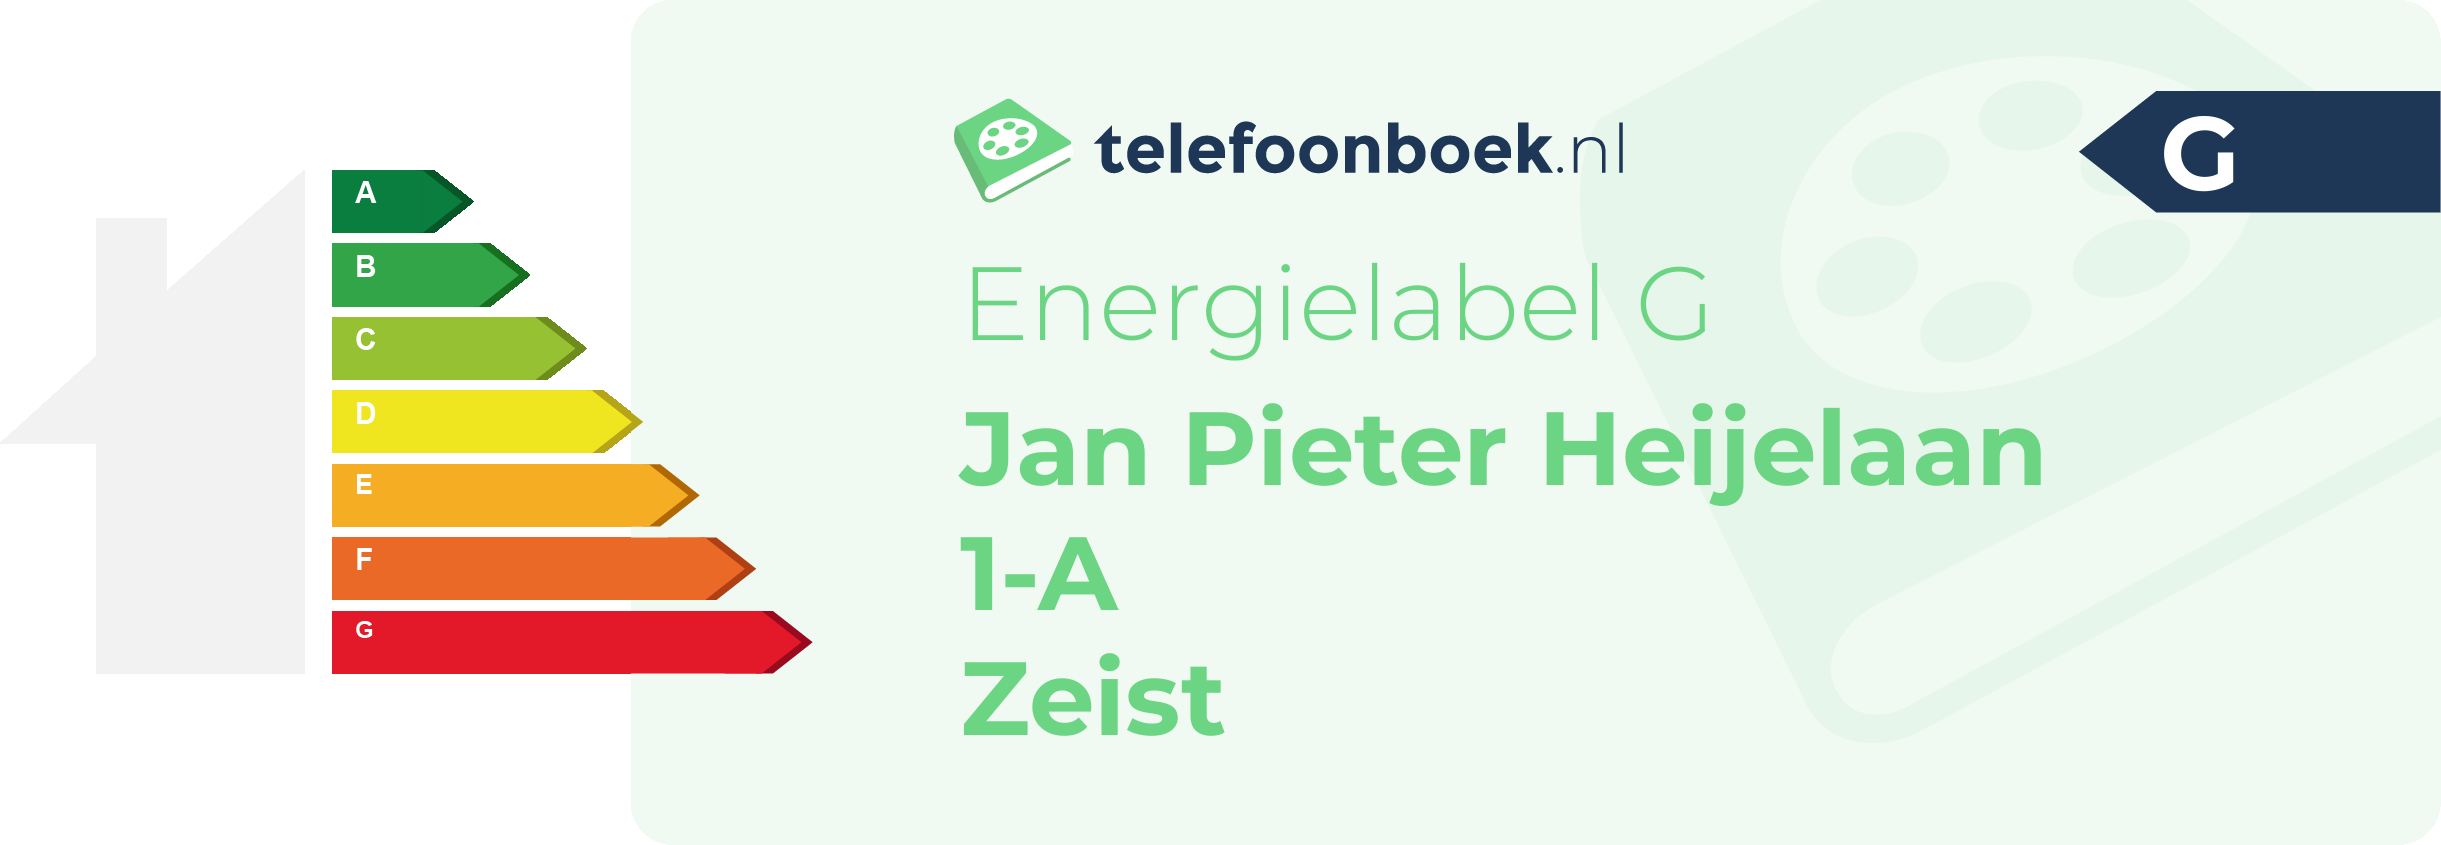 Energielabel Jan Pieter Heijelaan 1-A Zeist